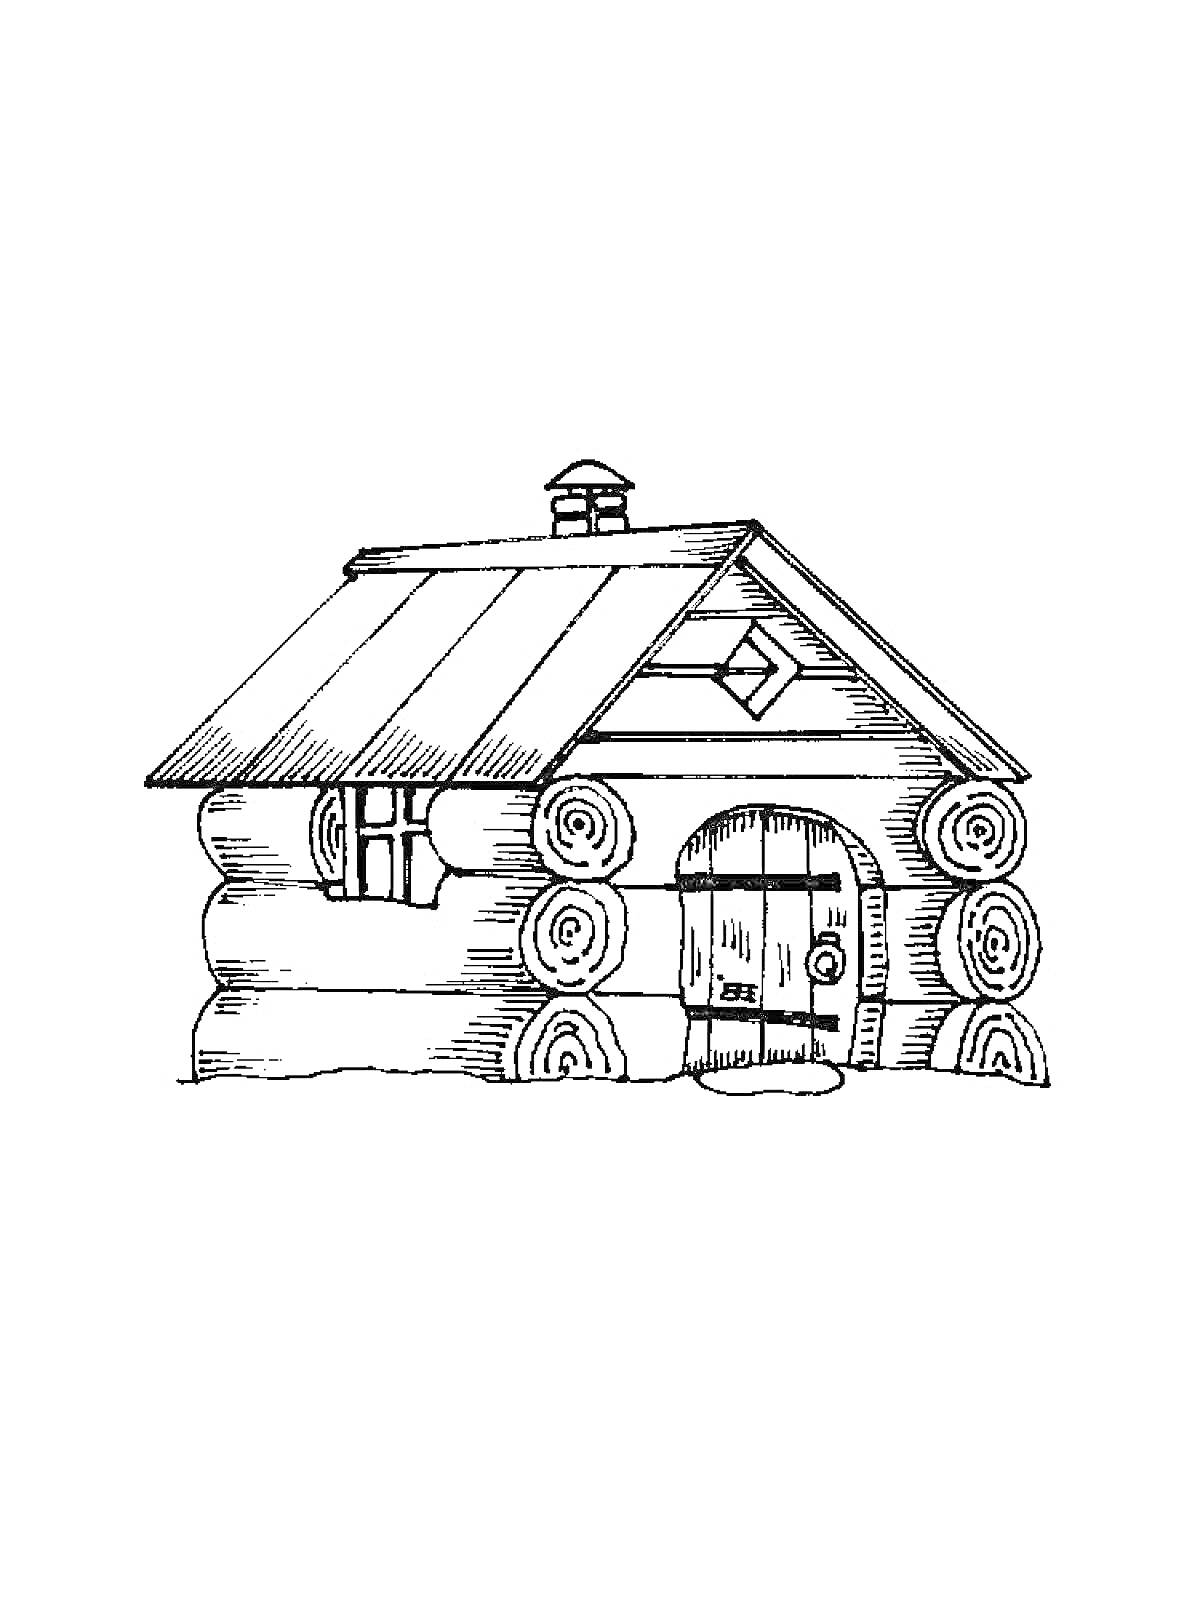 Раскраска Деревянная изба с бревенчатыми стенами, двускатной крышей, дверью с арочным верхом и небольшим окном под крышей.